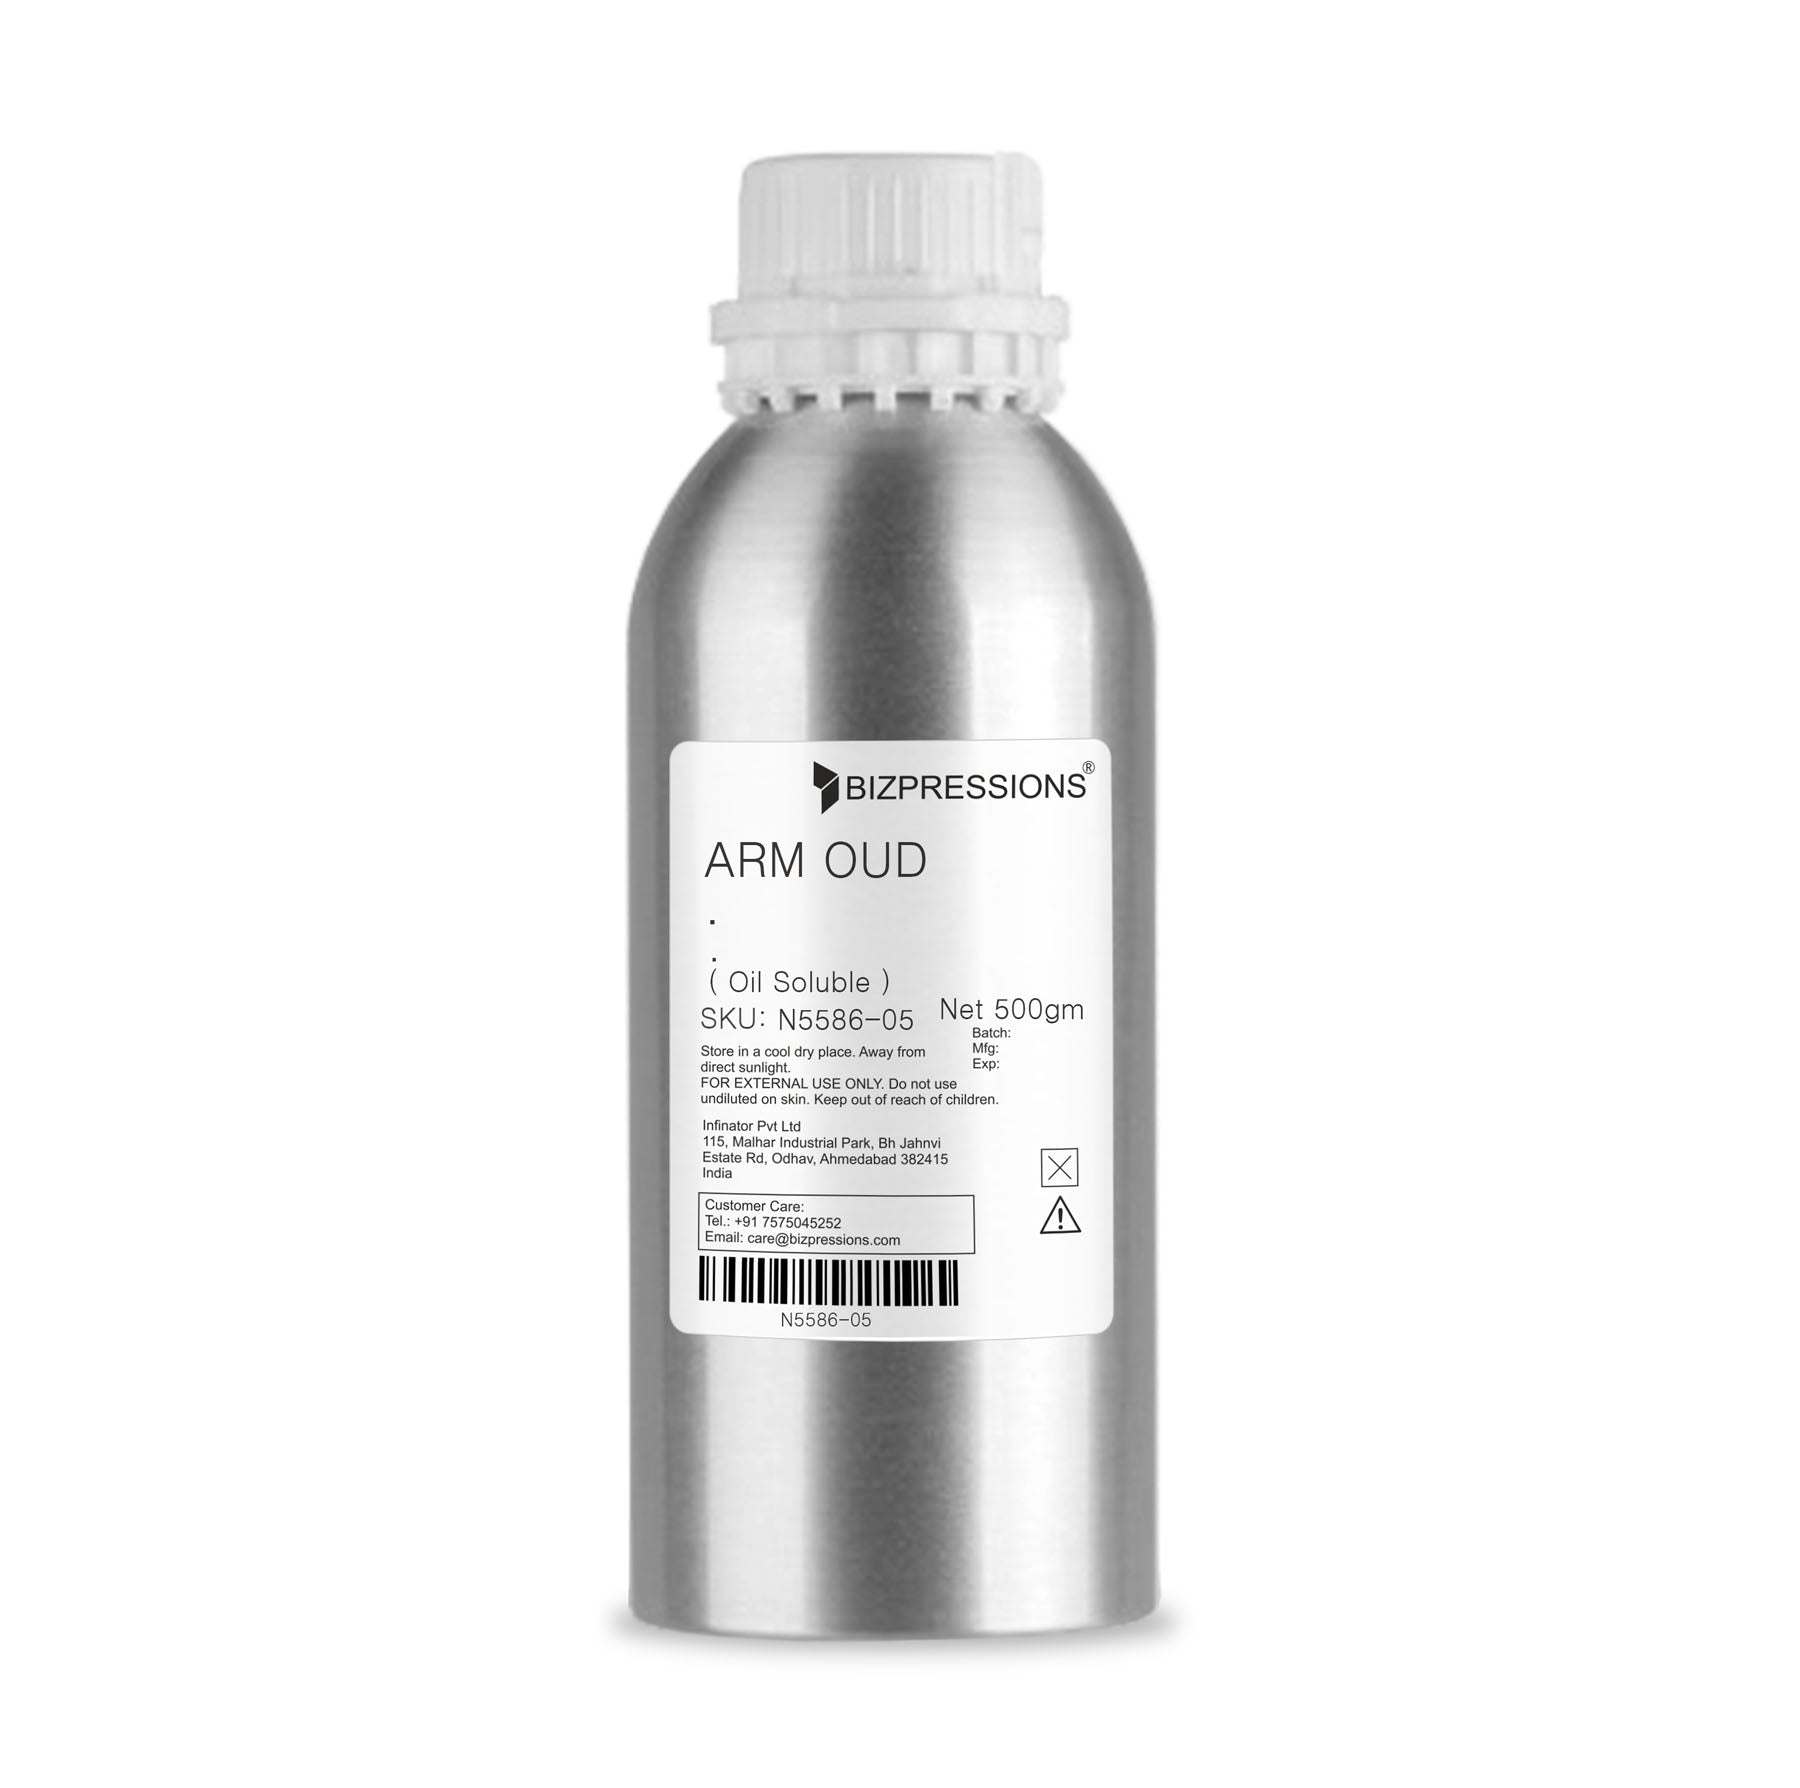 ARM OUD - Fragrance ( Oil Soluble ) - 500 gm